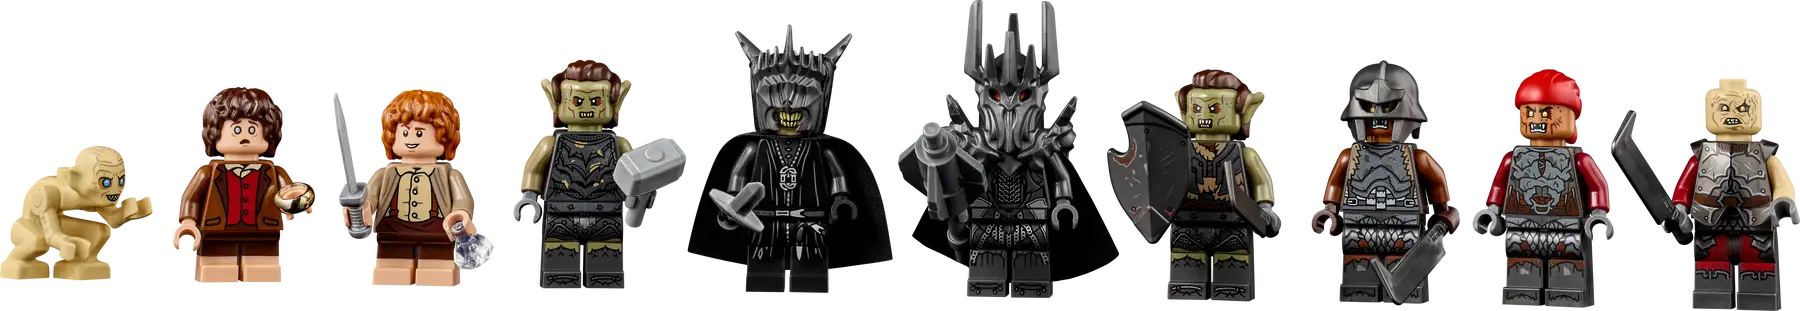 LEGO El Señor de los Anillos: Barad-dûr